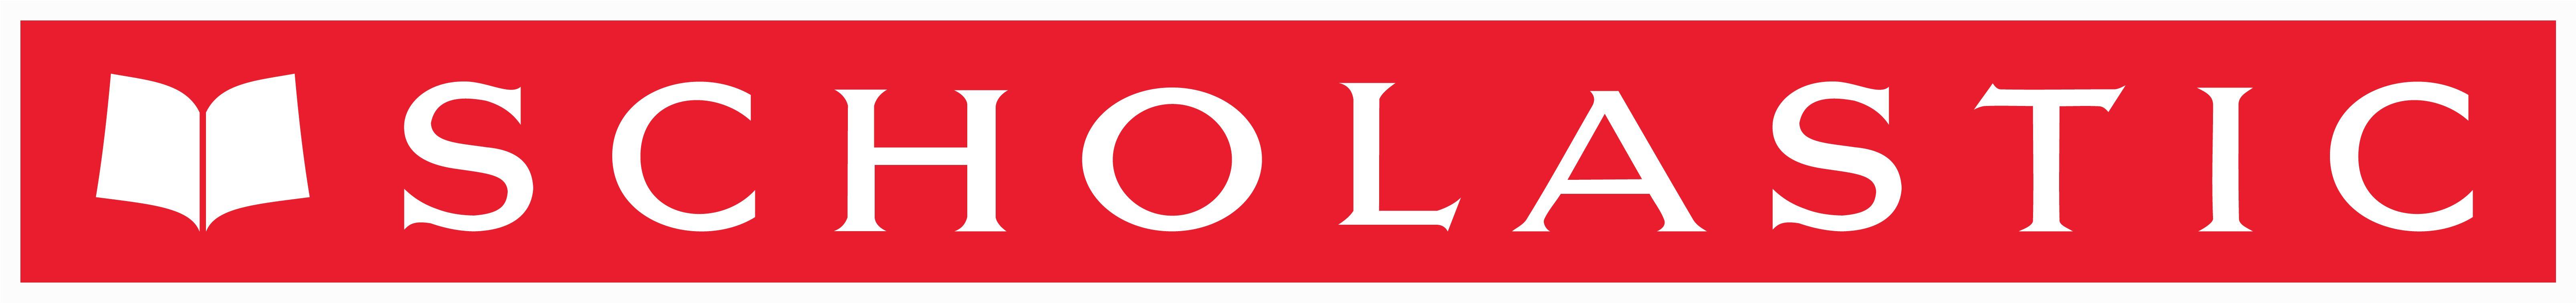 Scholastic Logo - LogoDix